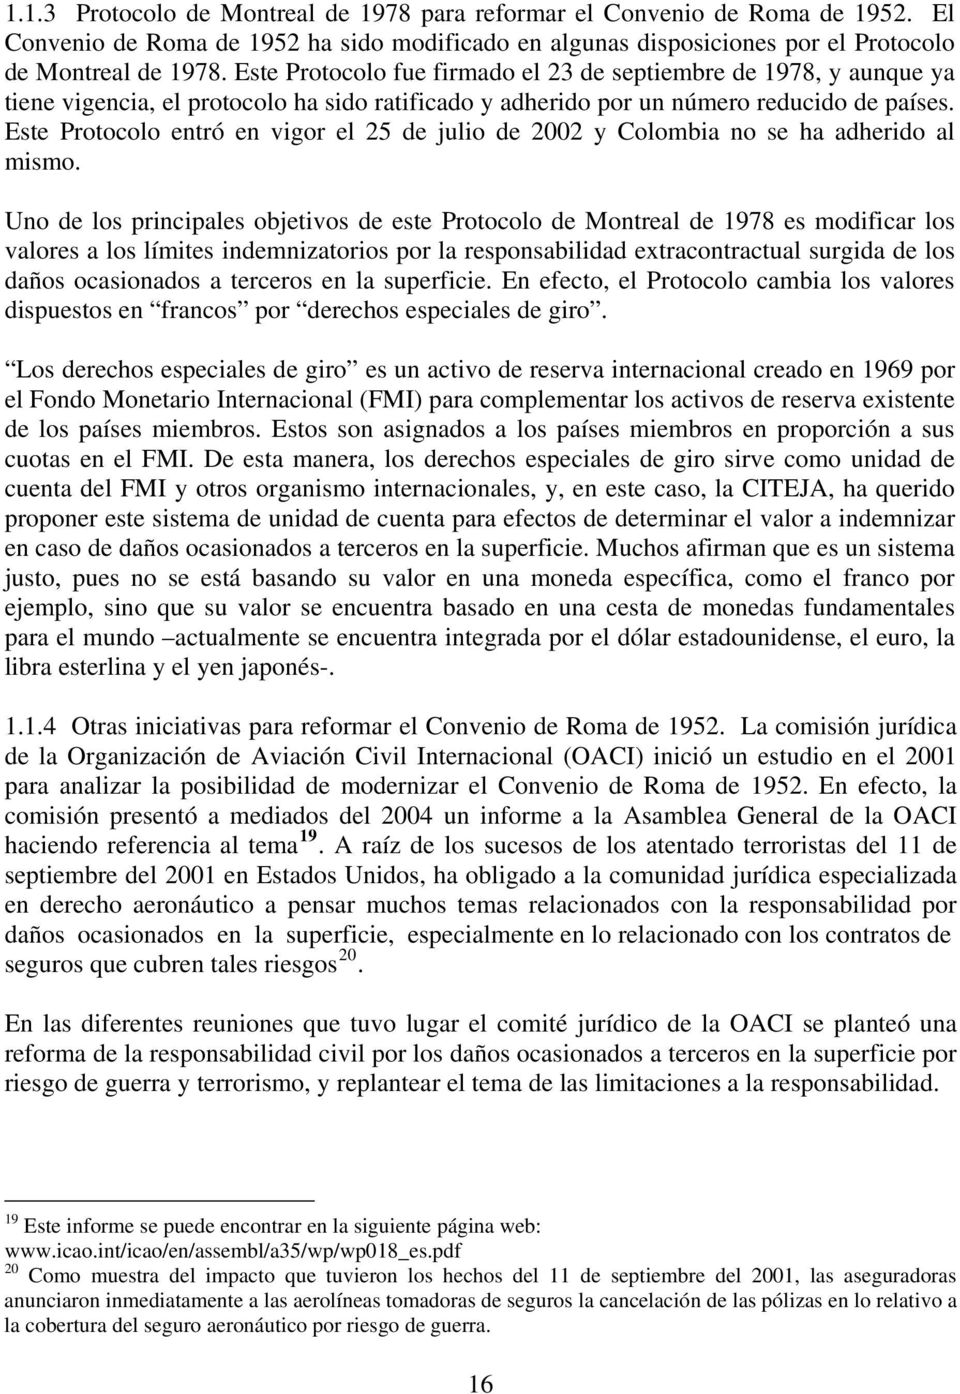 Este Protocolo entró en vigor el 25 de julio de 2002 y Colombia no se ha adherido al mismo.